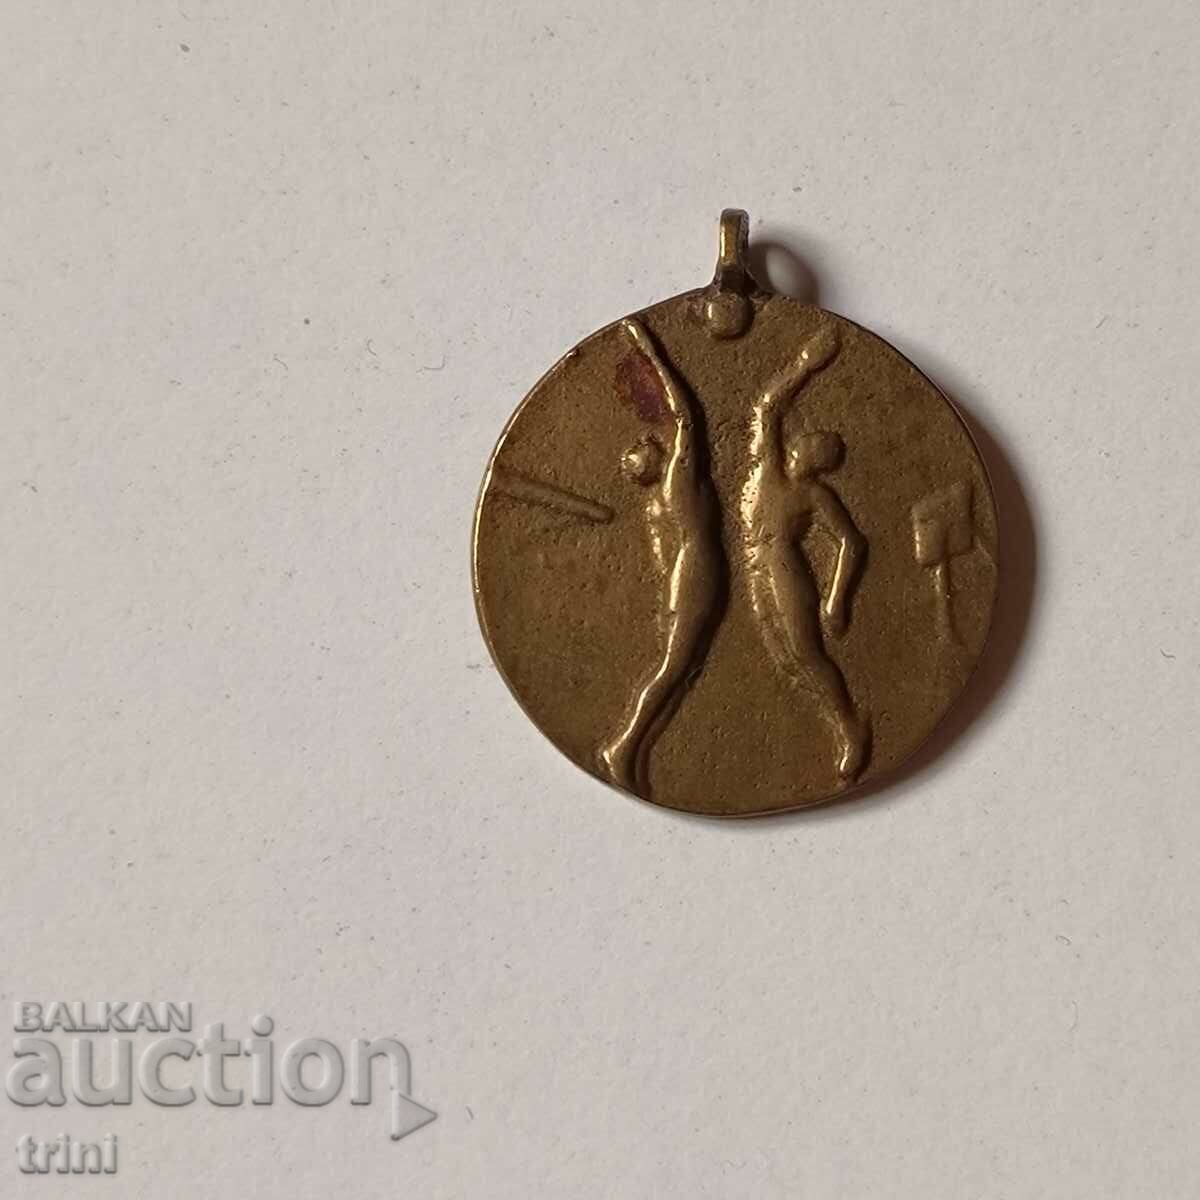 Αθλητικό μετάλλιο 1952 - βόλεϊ